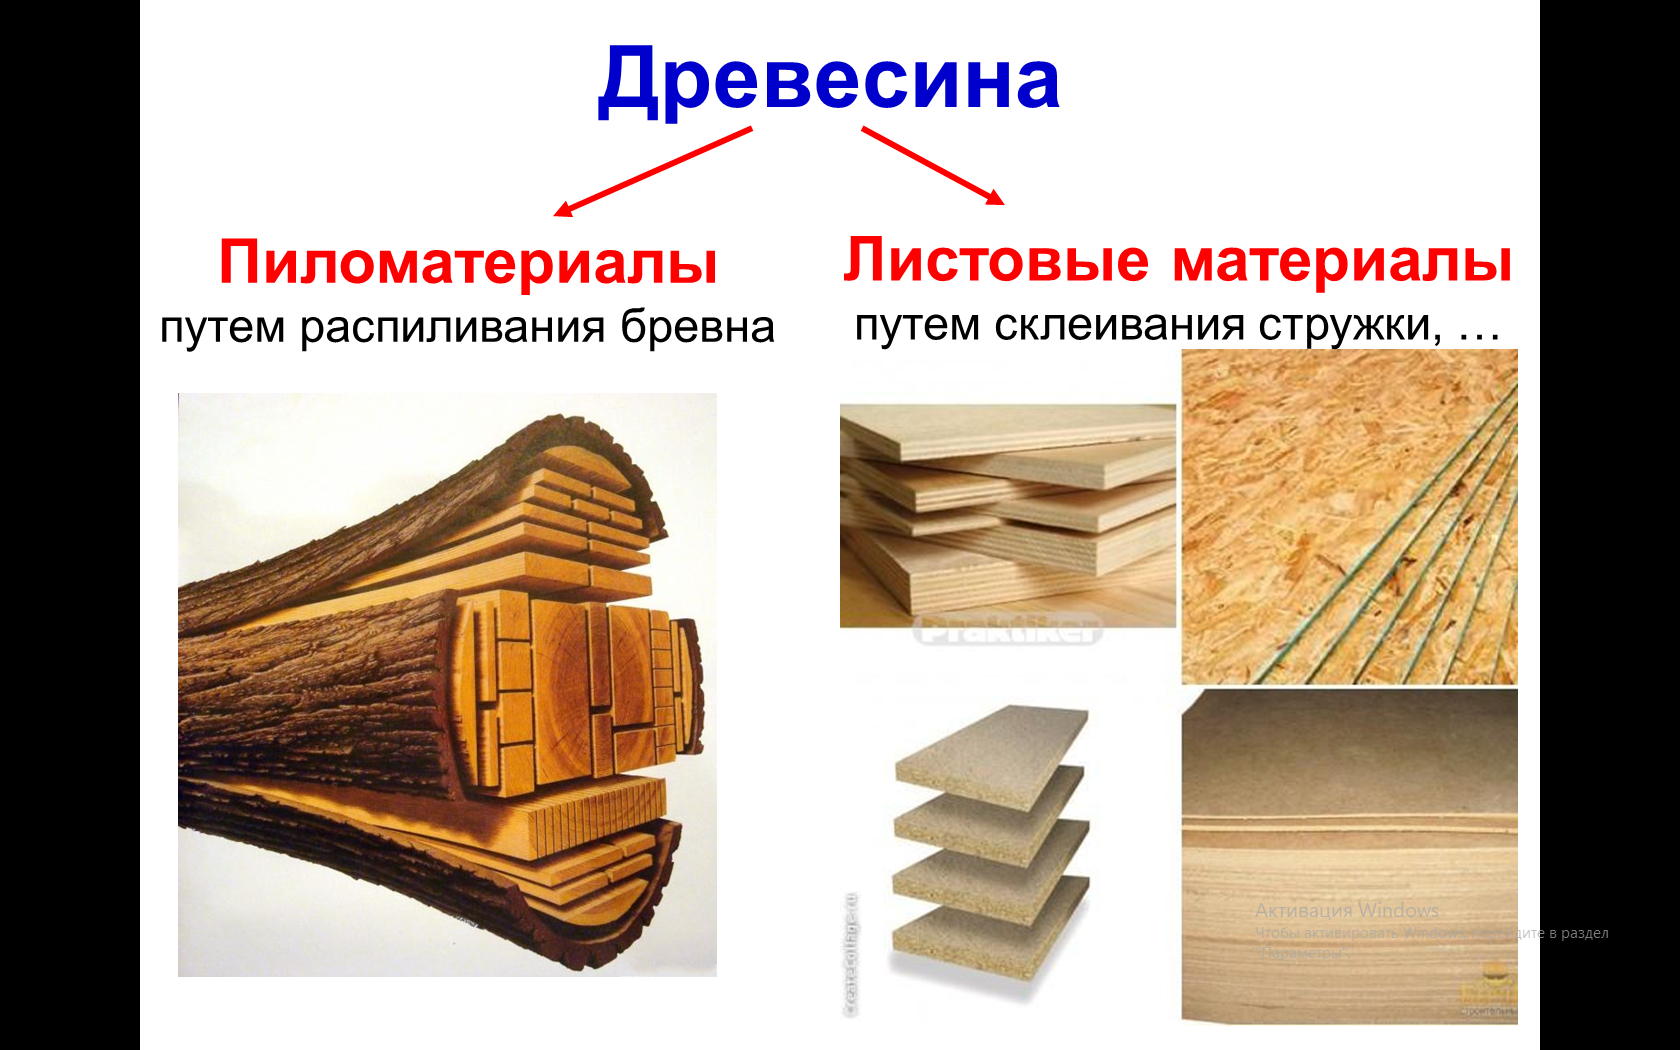 Виды деревообработки. Древесина и пиломатериалы. Пиломатериалы и древесные материалы. Древесина и древесные материалы. Пиломатериалы из древесины.